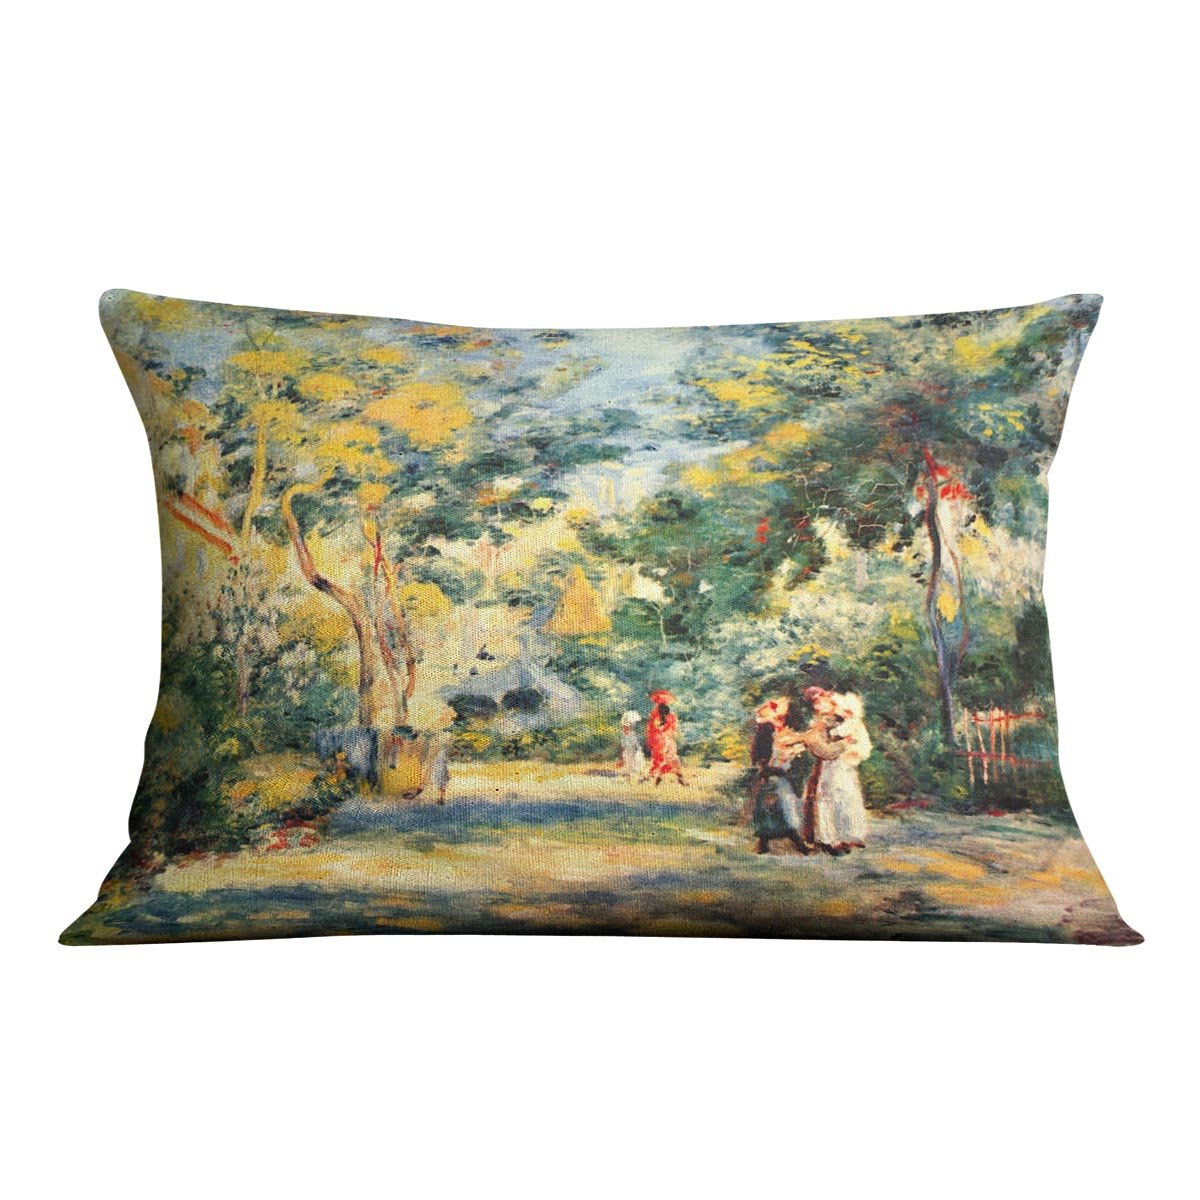 Figures in the garden by Renoir Throw Pillow